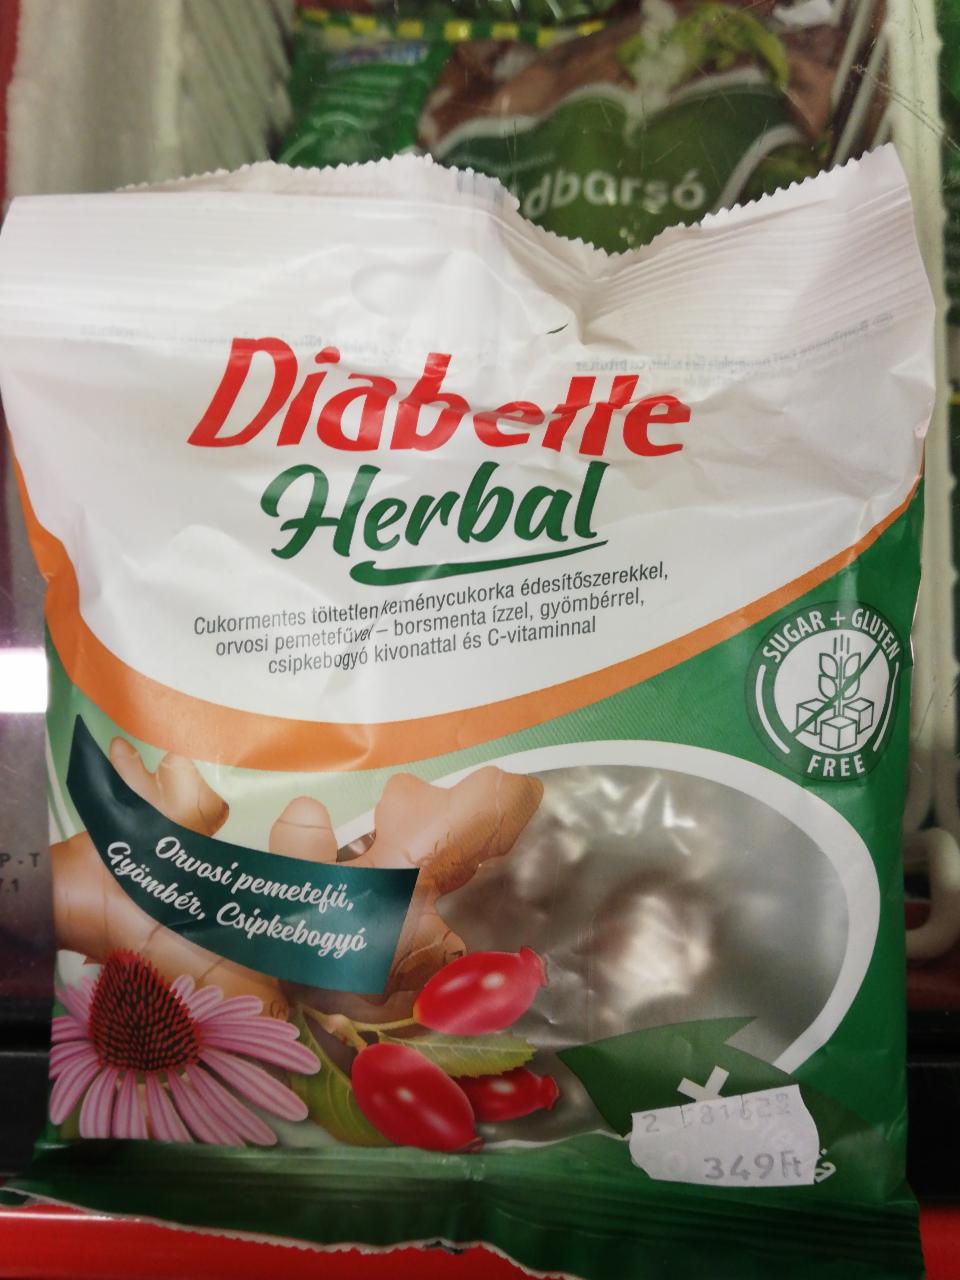 Képek - Töltetlen cukormentes keménycukorka édesítőszerekkel orvosi pemetefűvel borsmenta ízzel gyömbérrel csipkebogyó kivonattal és c vitaminnal Diabette